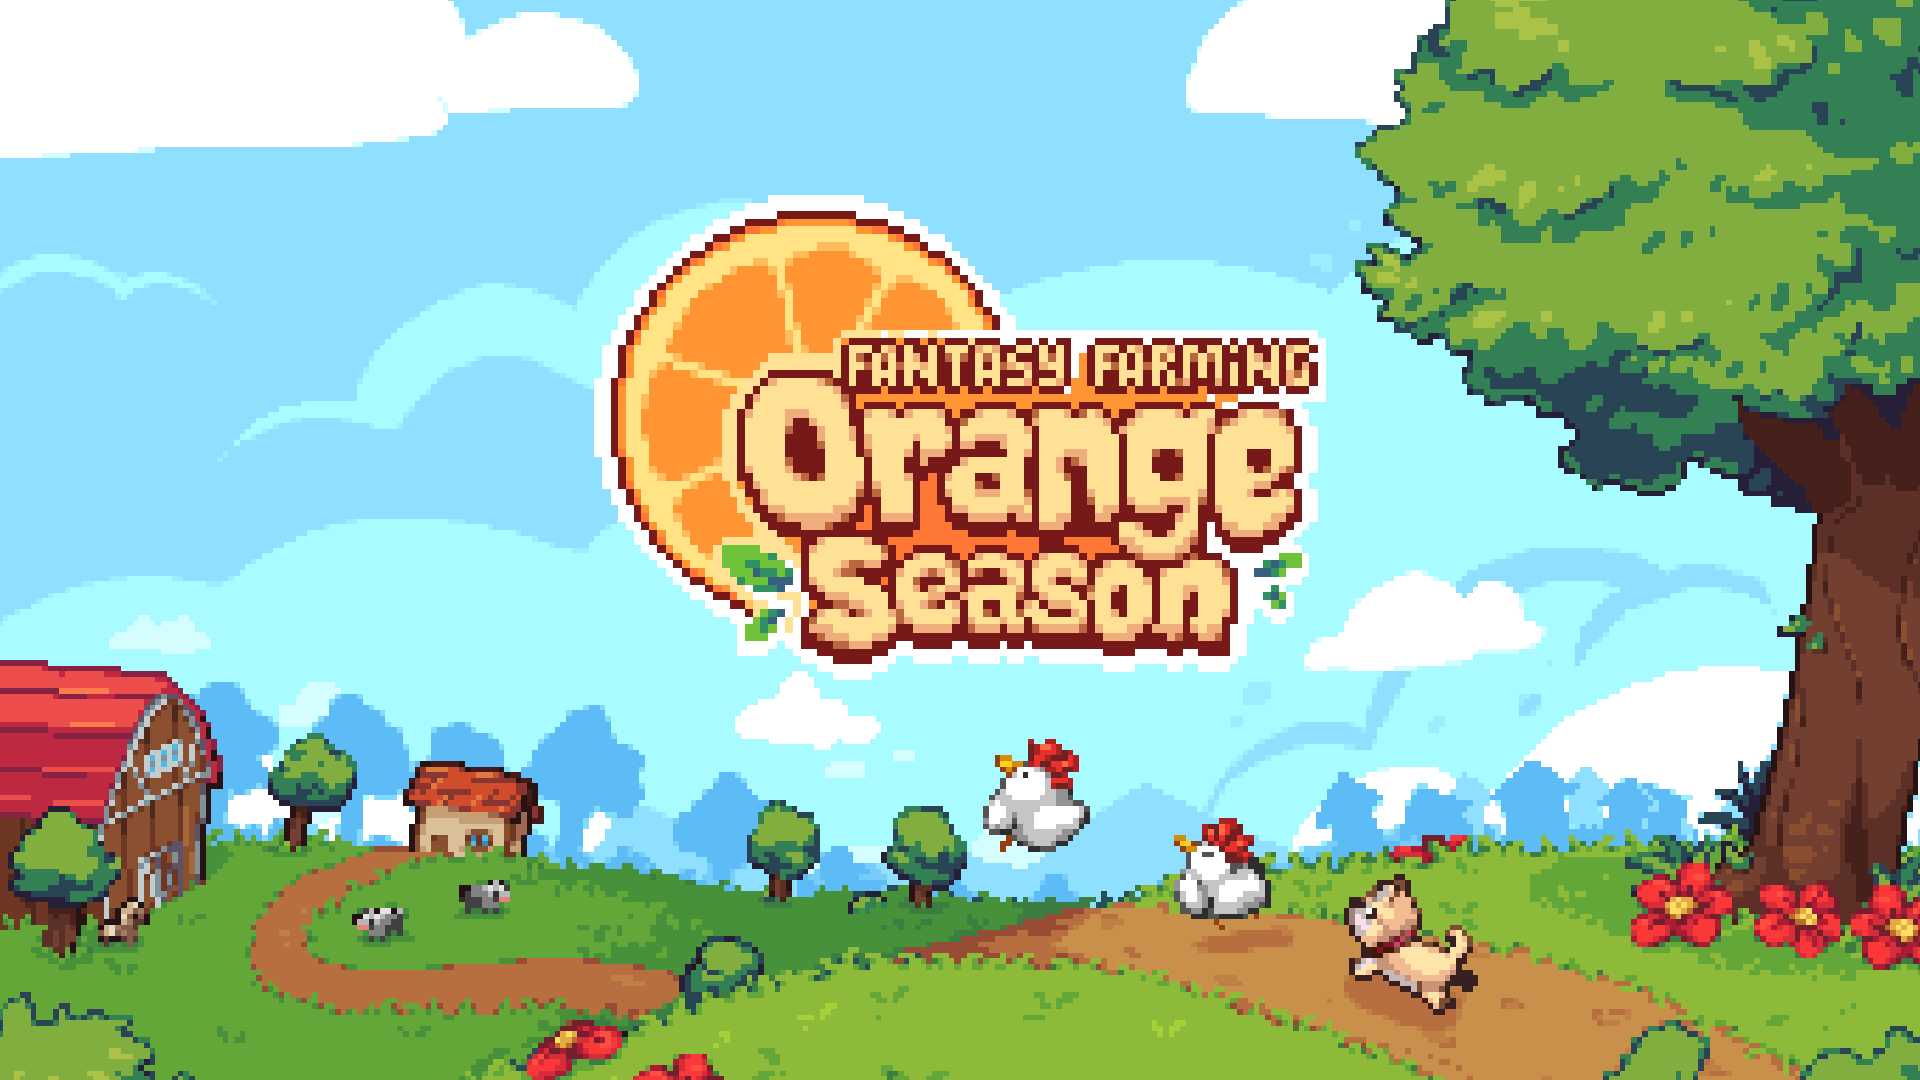 Fantasy farming: orange season - jogo recebe grande atualização | 9b48f523 a8e5 4e60 bd26 94ca3df1aaeb | fantasy farming notícias